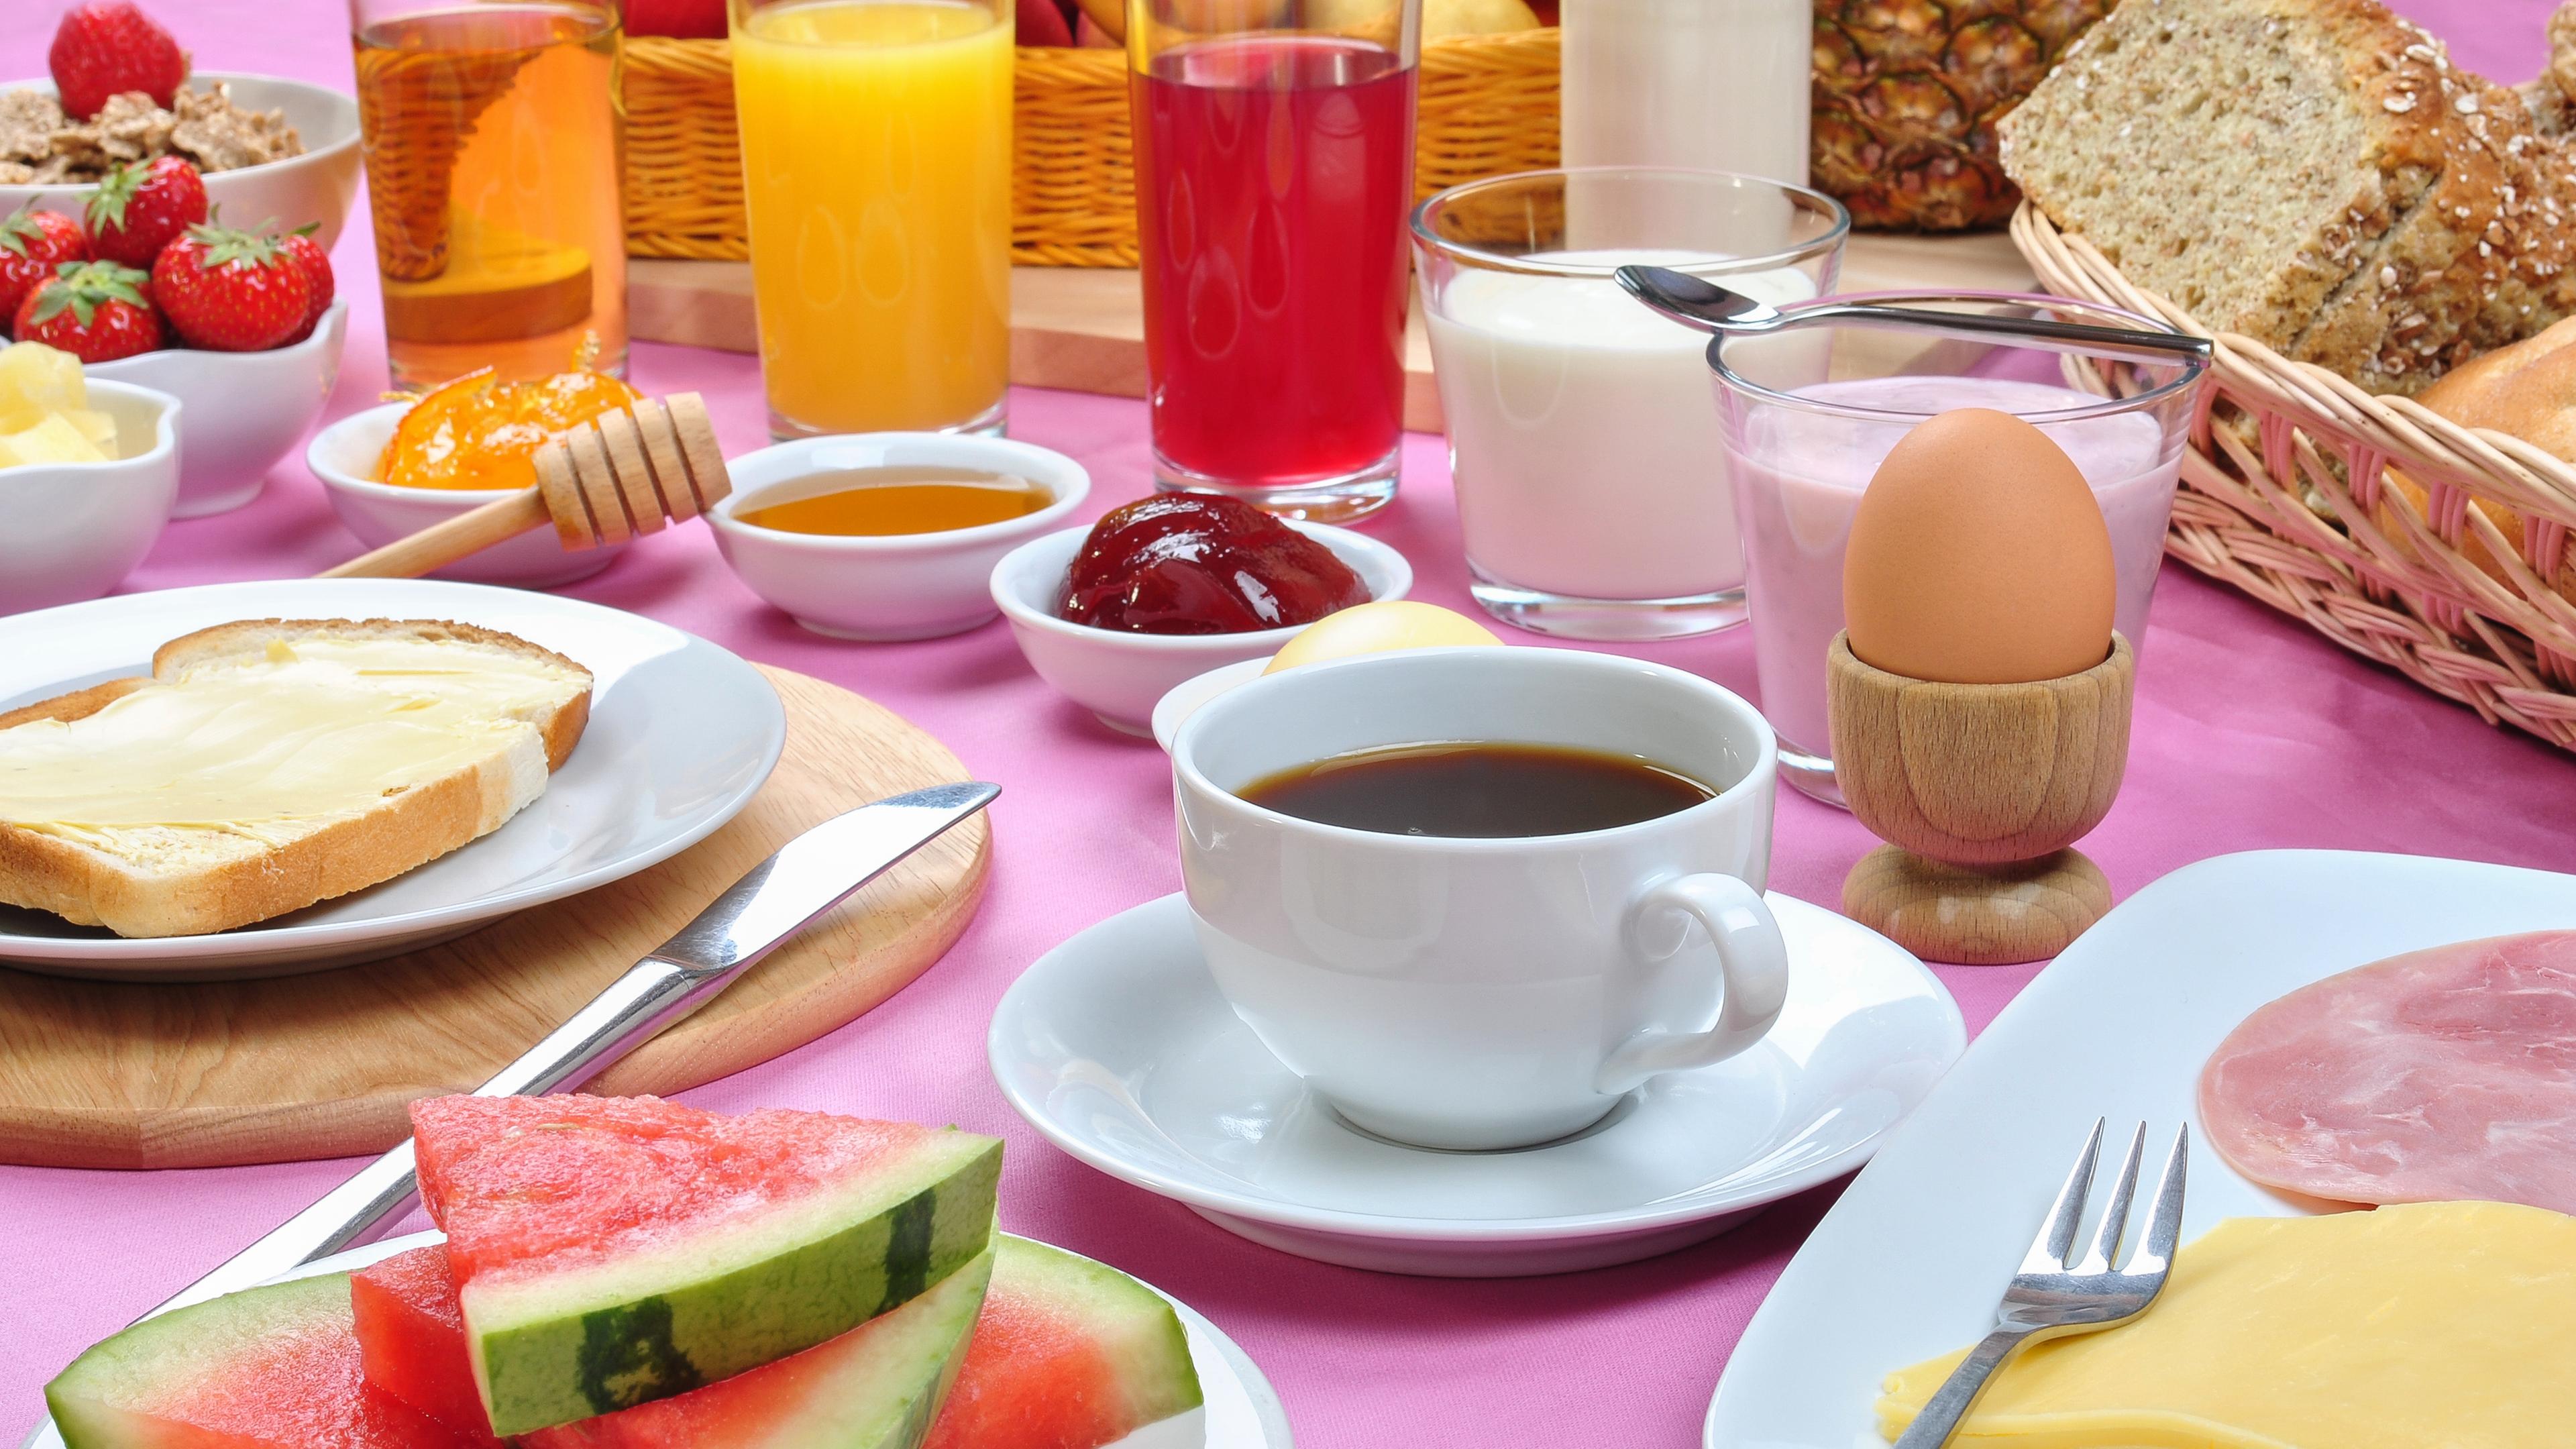 Ein reichlich gedeckter Tisch zum Frühstück: mit Kaffee, aufgeschnittener Wassermelone, Toastbrot, Wurst- und Käsesufschnitt, einem Ei und Saft.